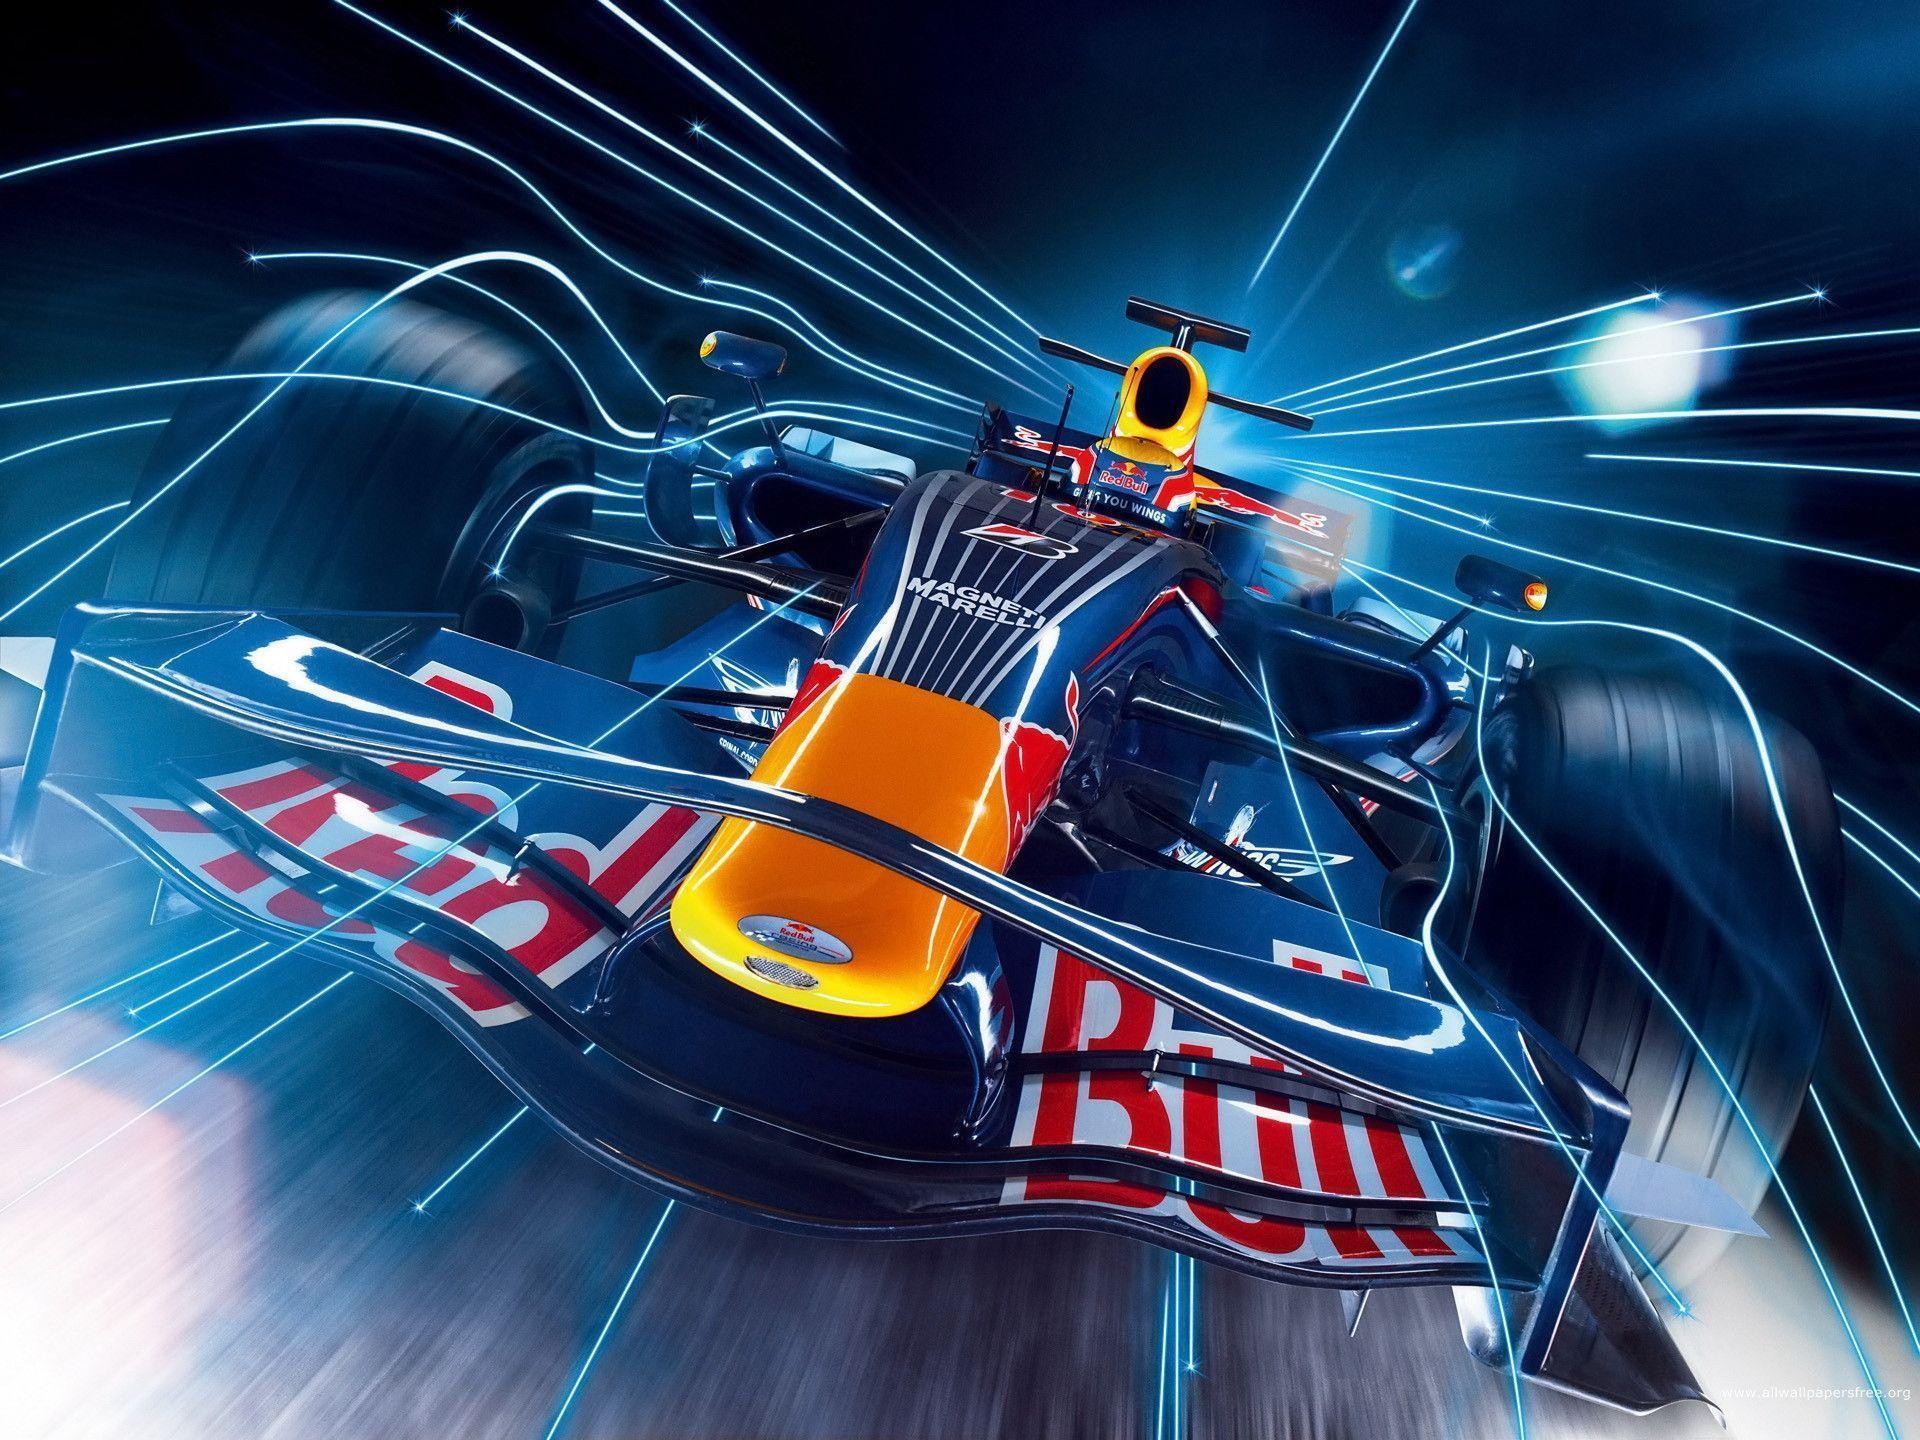 HD Red Bull Racing Car Wallpaper